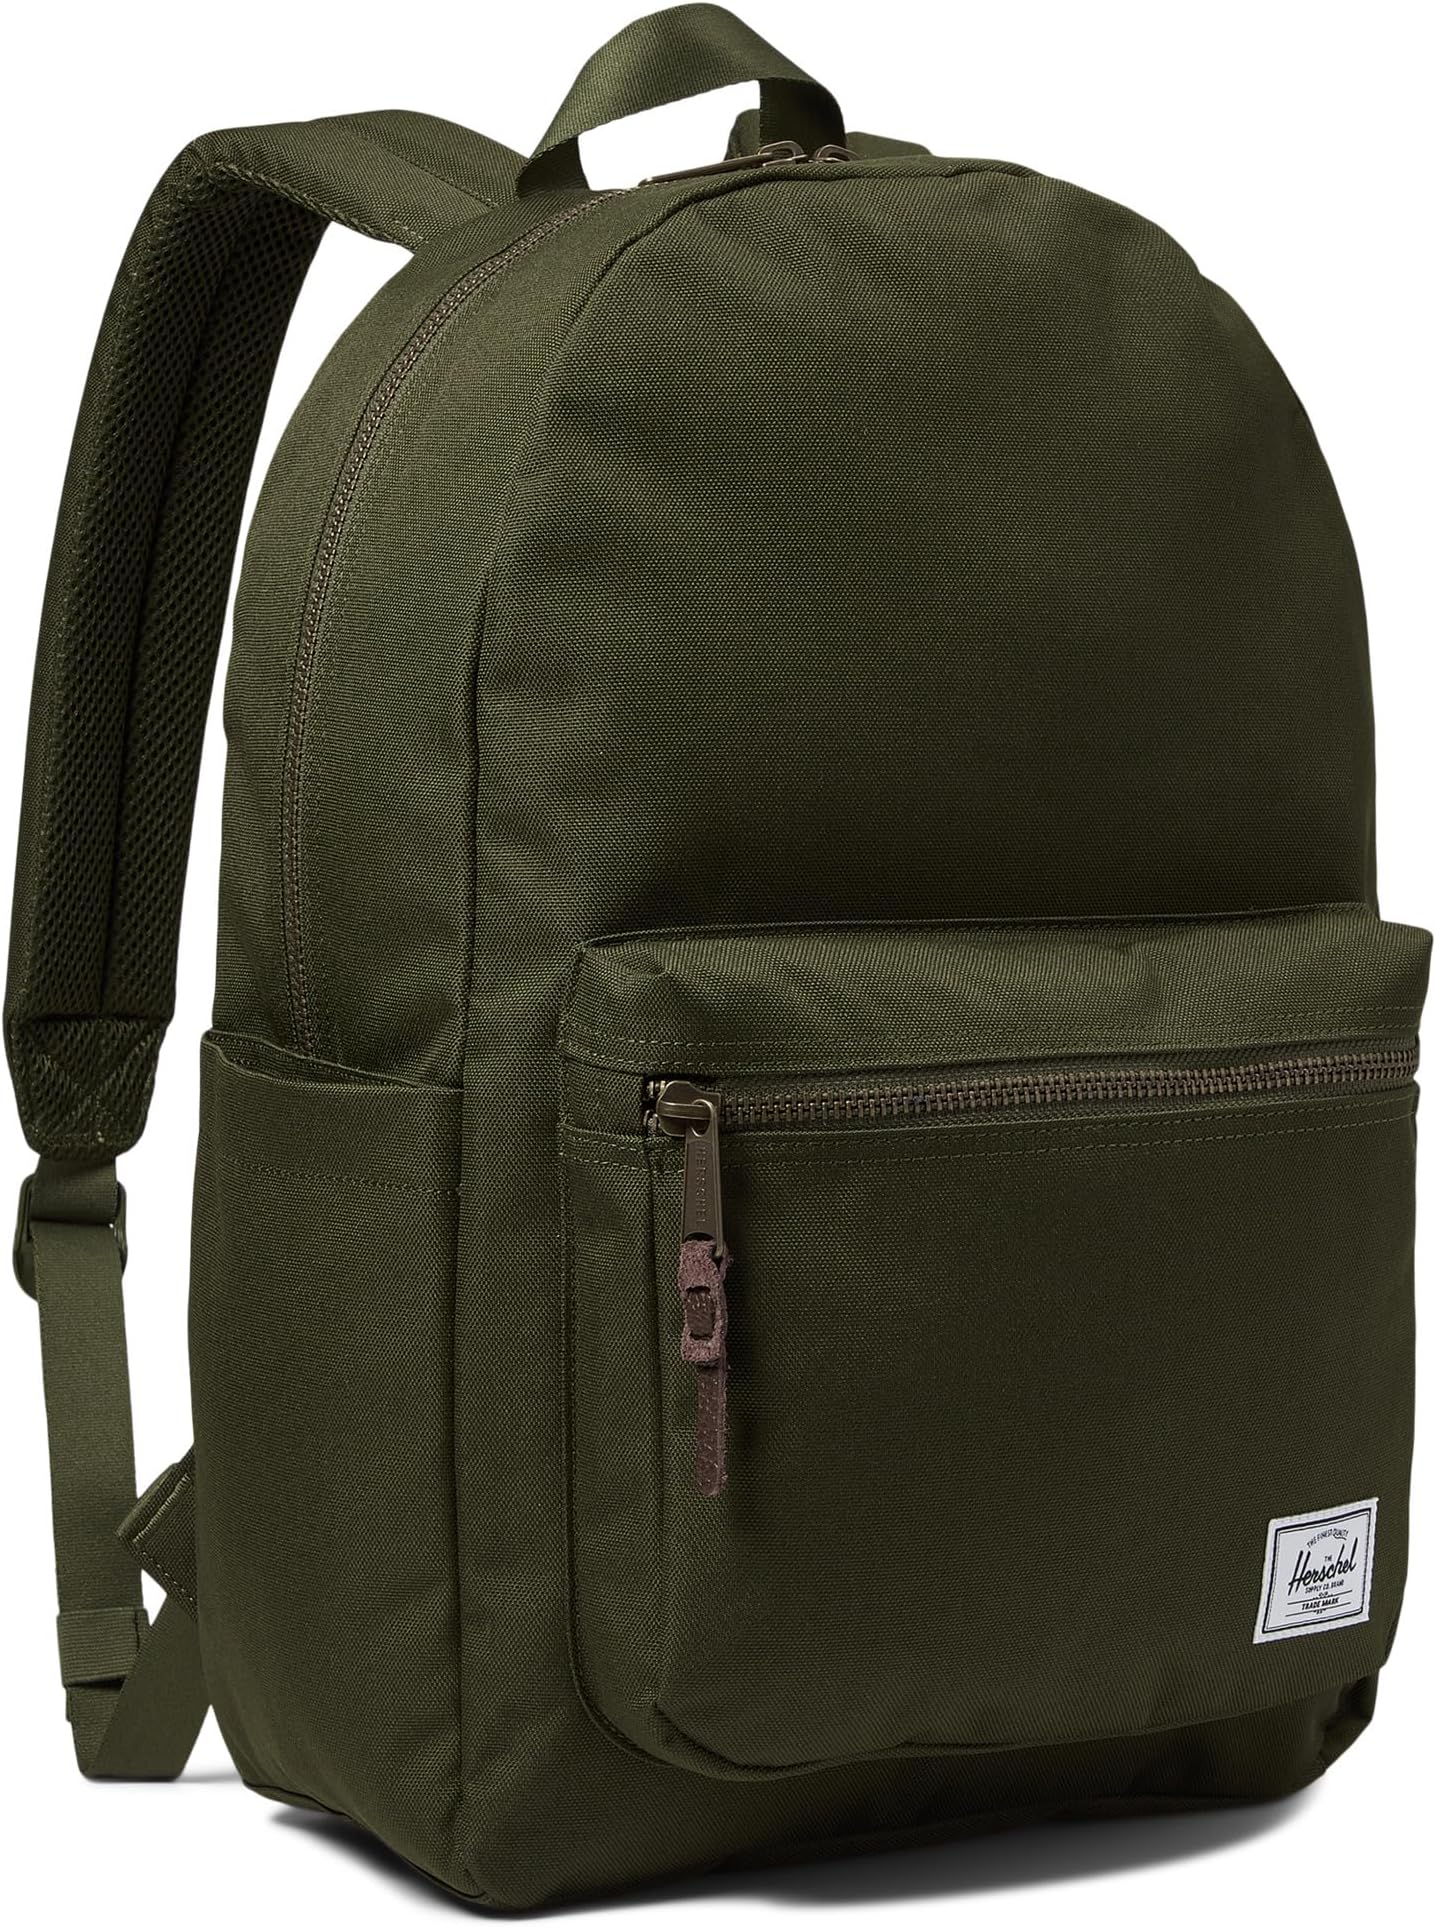 сумка heritage crossbody herschel supply co цвет ivy green Рюкзак Settlement Backpack Herschel Supply Co., цвет Ivy Green